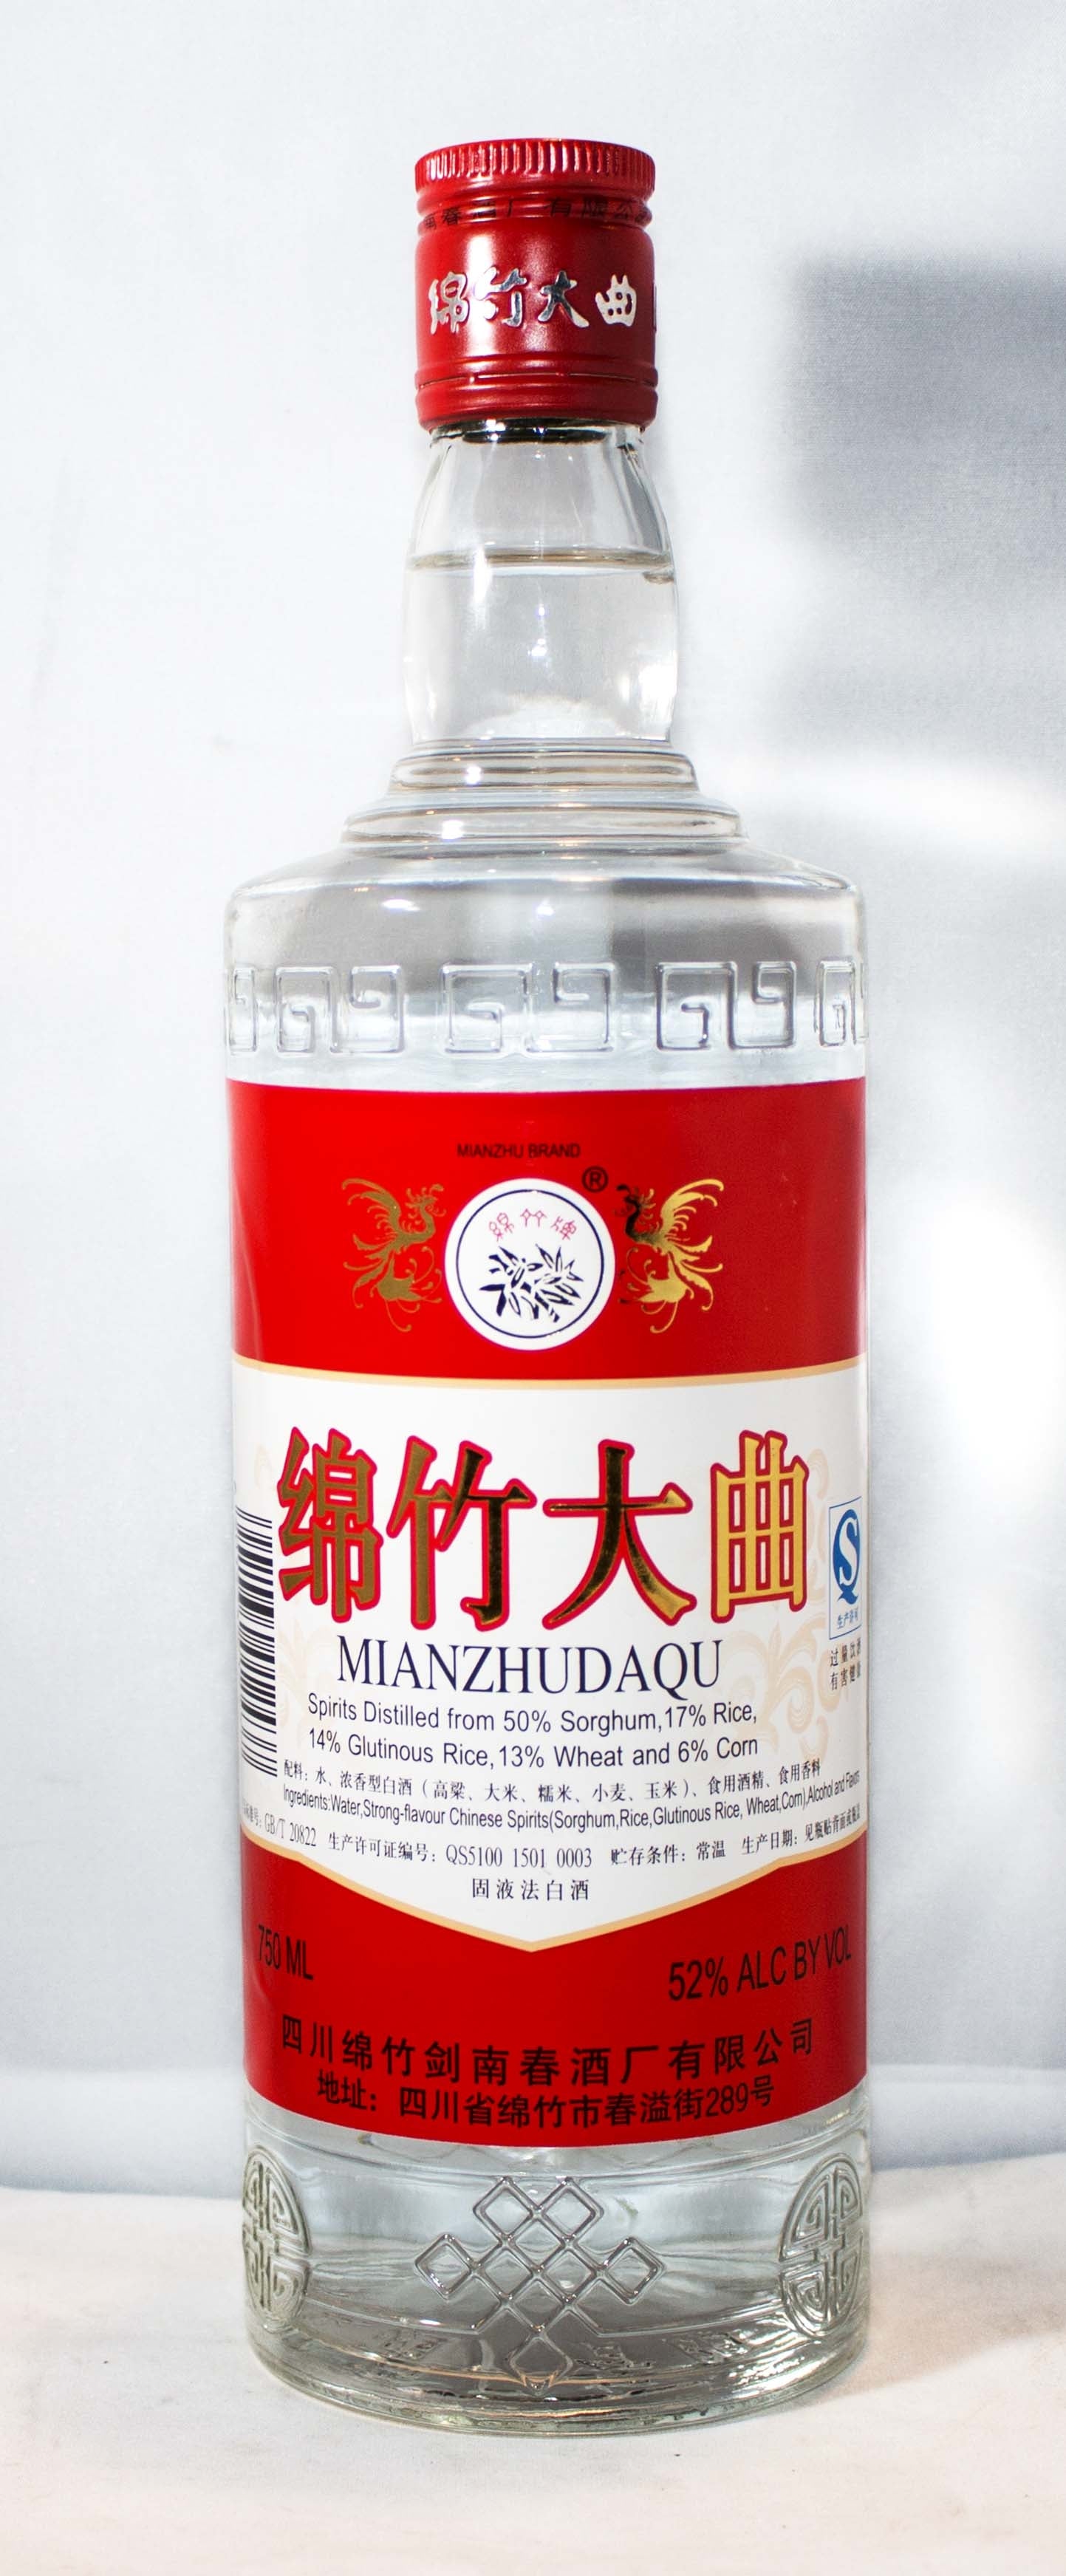 MIANZHUDAQU SPIRITS CHINA 104PF 750ML